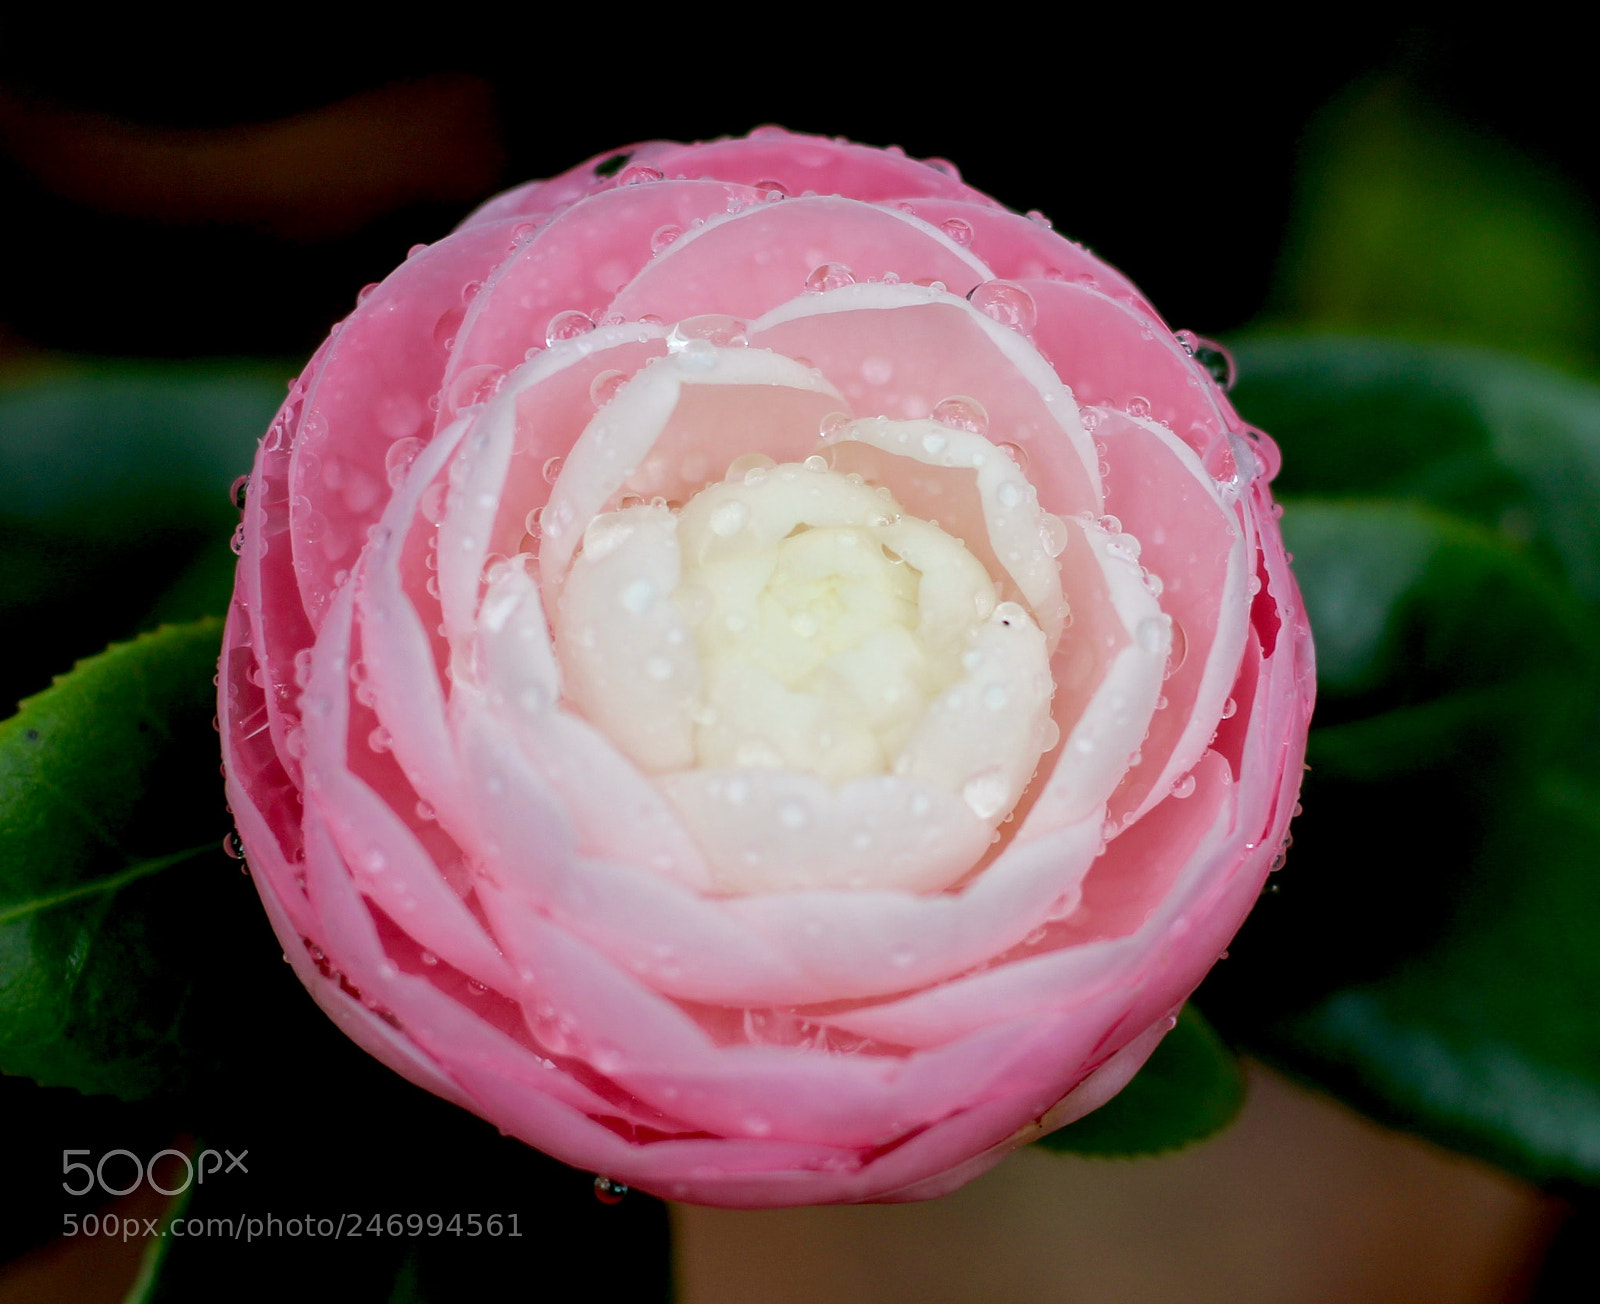 Canon EOS 100D (EOS Rebel SL1 / EOS Kiss X7) sample photo. Camellia budding photography